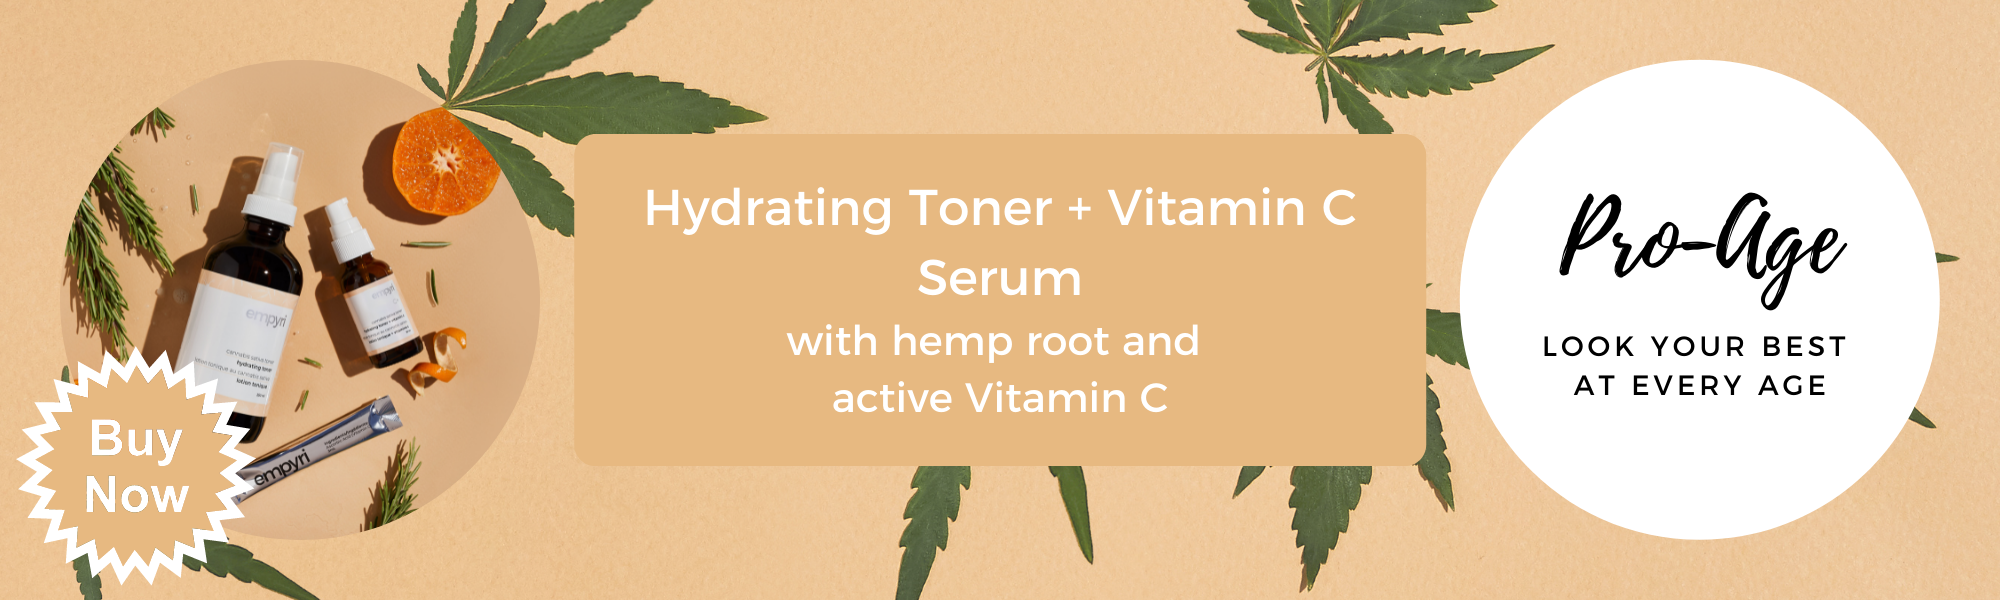 Empyri vitamin C toner